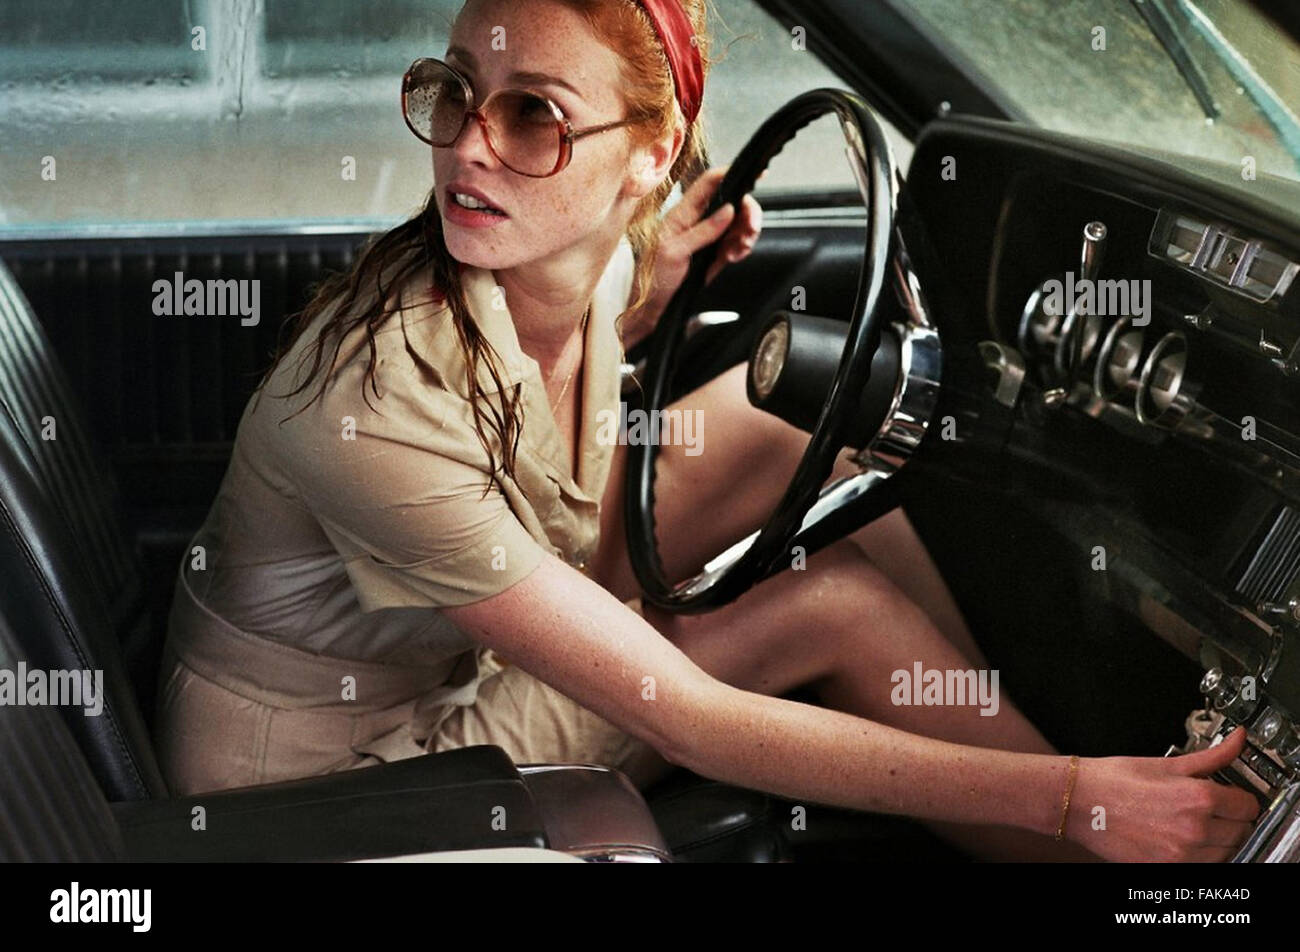 DIE LADY IN THE Auto mit Brille und A GUN 2015 Magnolia Pictures Film mit Freya Mavor Stockfoto